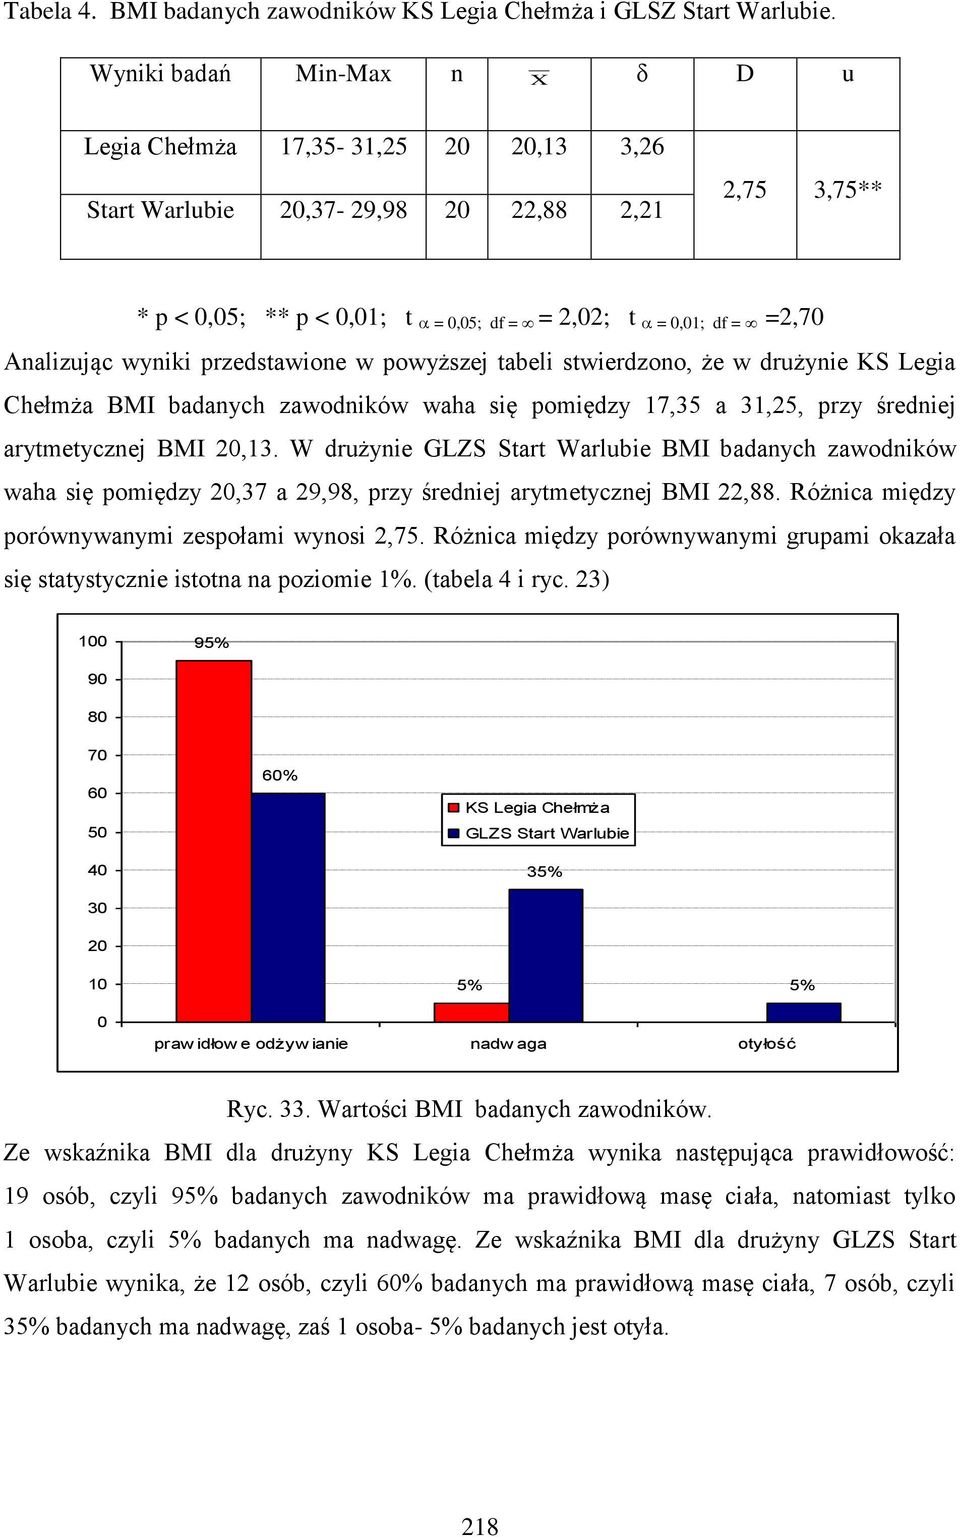 Analizując wyniki przedstawione w powyższej tabeli stwierdzono, że w drużynie KS Legia Chełmża BMI badanych zawodników waha się pomiędzy 17,35 a 31,25, przy średniej arytmetycznej BMI 20,13.